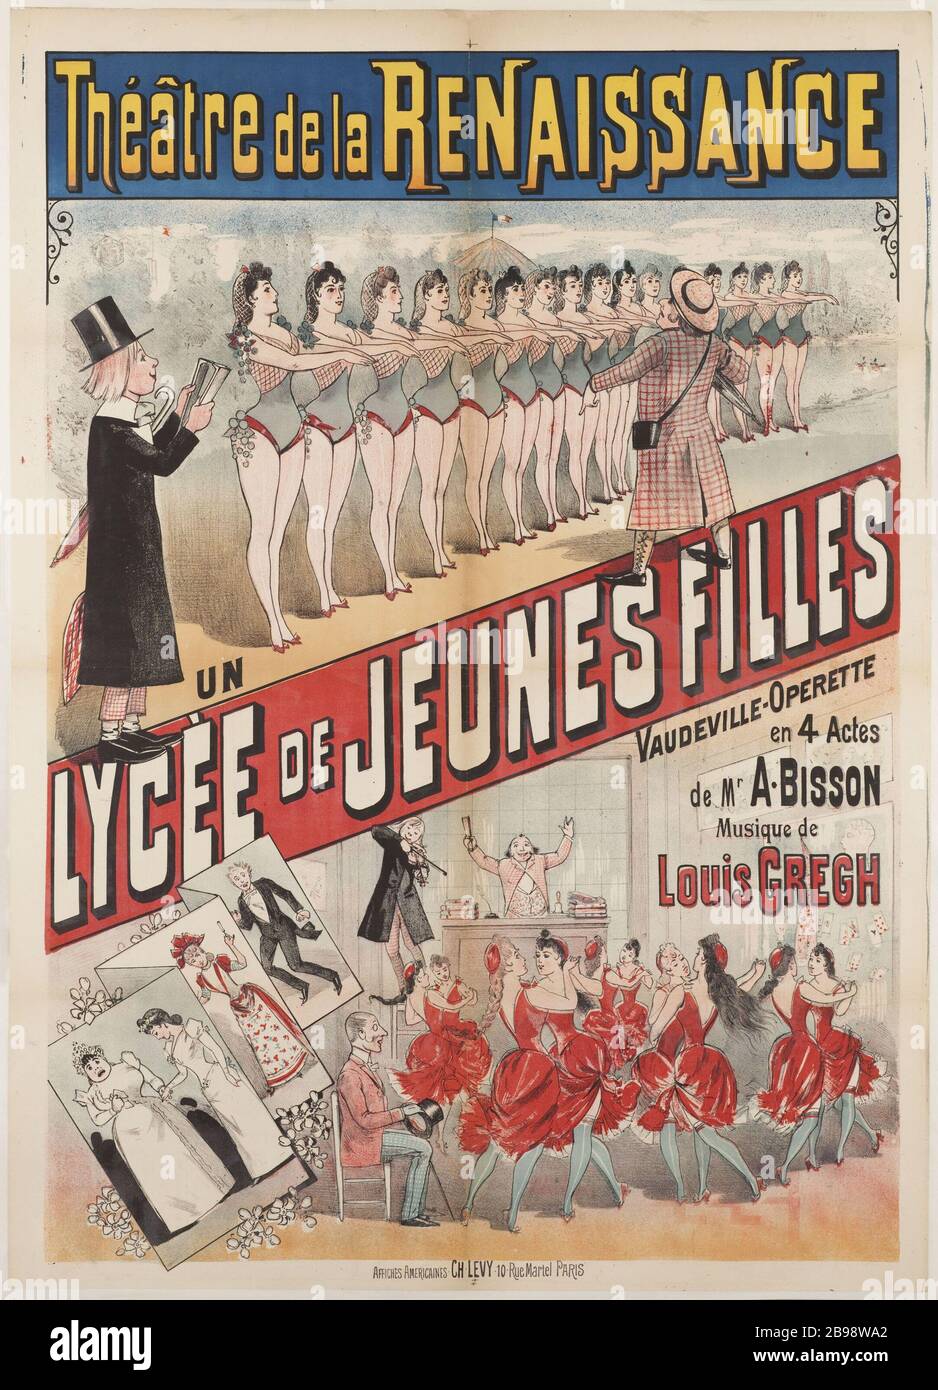 THEATER OF THE RENAISSANCE SCHOOL GIRLS 'Théâtre de la Renaissance, Lycée de jeunes filles'. Lithographie, 1890. Paris, musée Carnavalet. Stock Photo